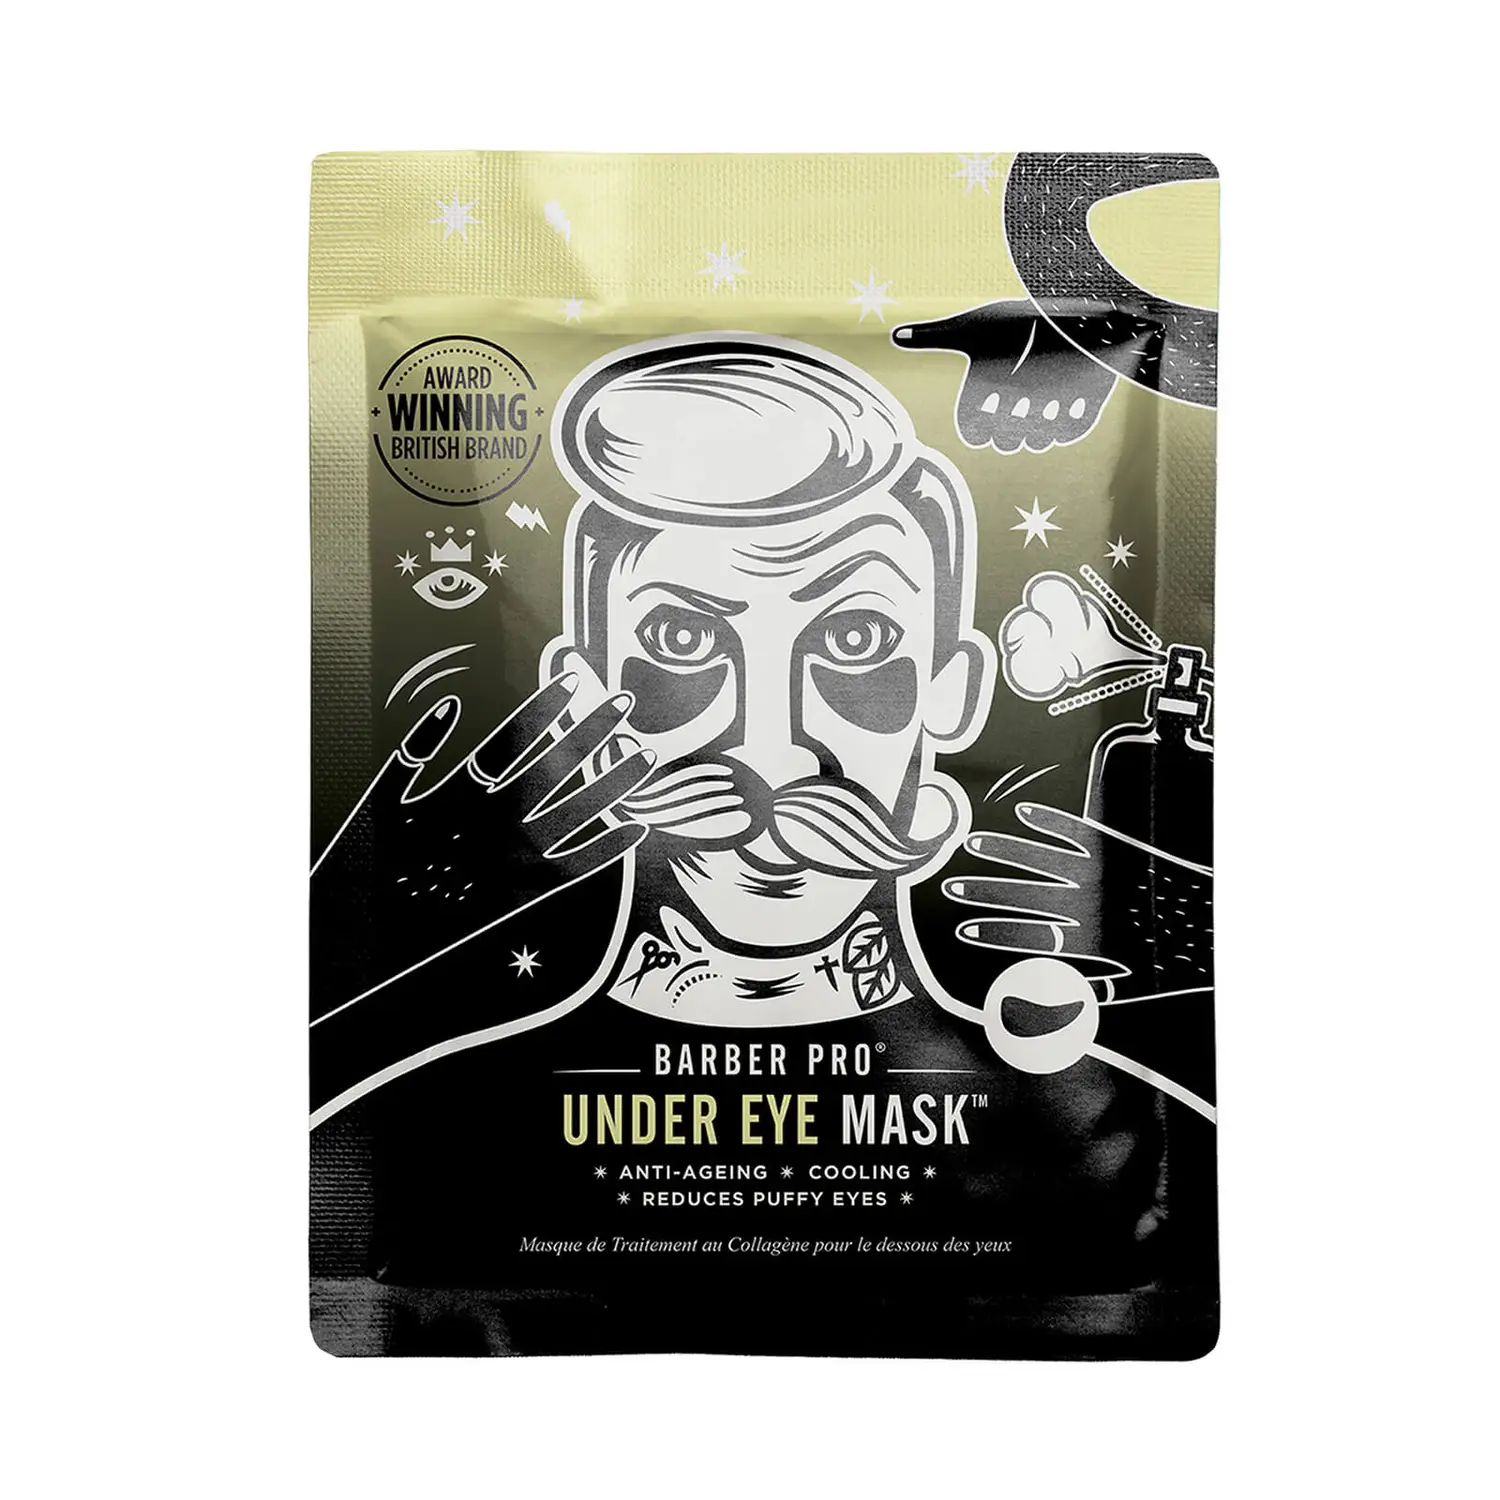 Barber Pro under eye mask